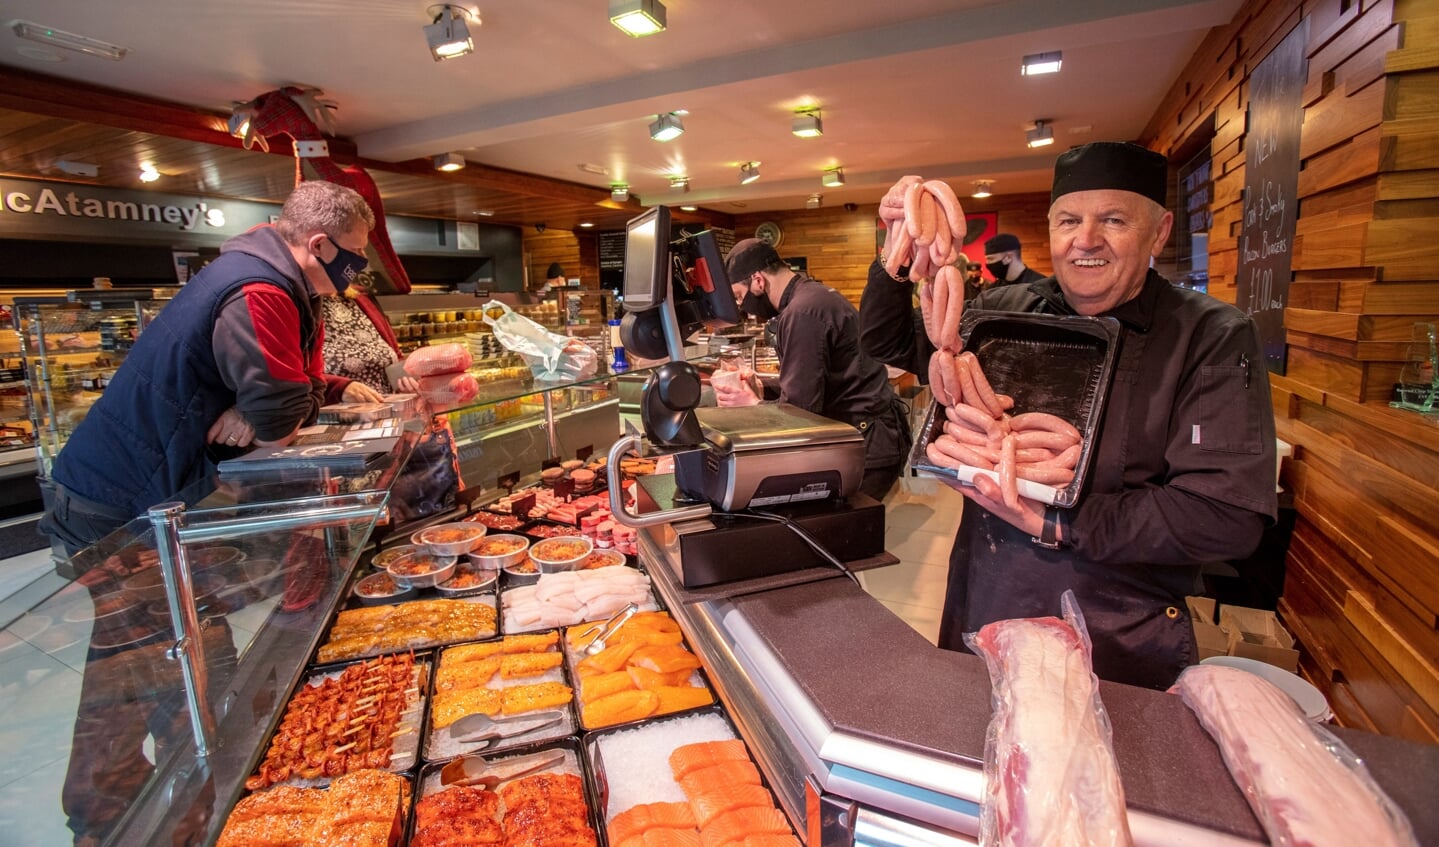 De Noord-Ierse slager Kieran McAtamney verkoopt worstjes van Brits varkensvlees. Het vlees moet officieel aan de strengere EU-regels voldoen. Maar dat wordt niet gecontroleerd. beeld afp